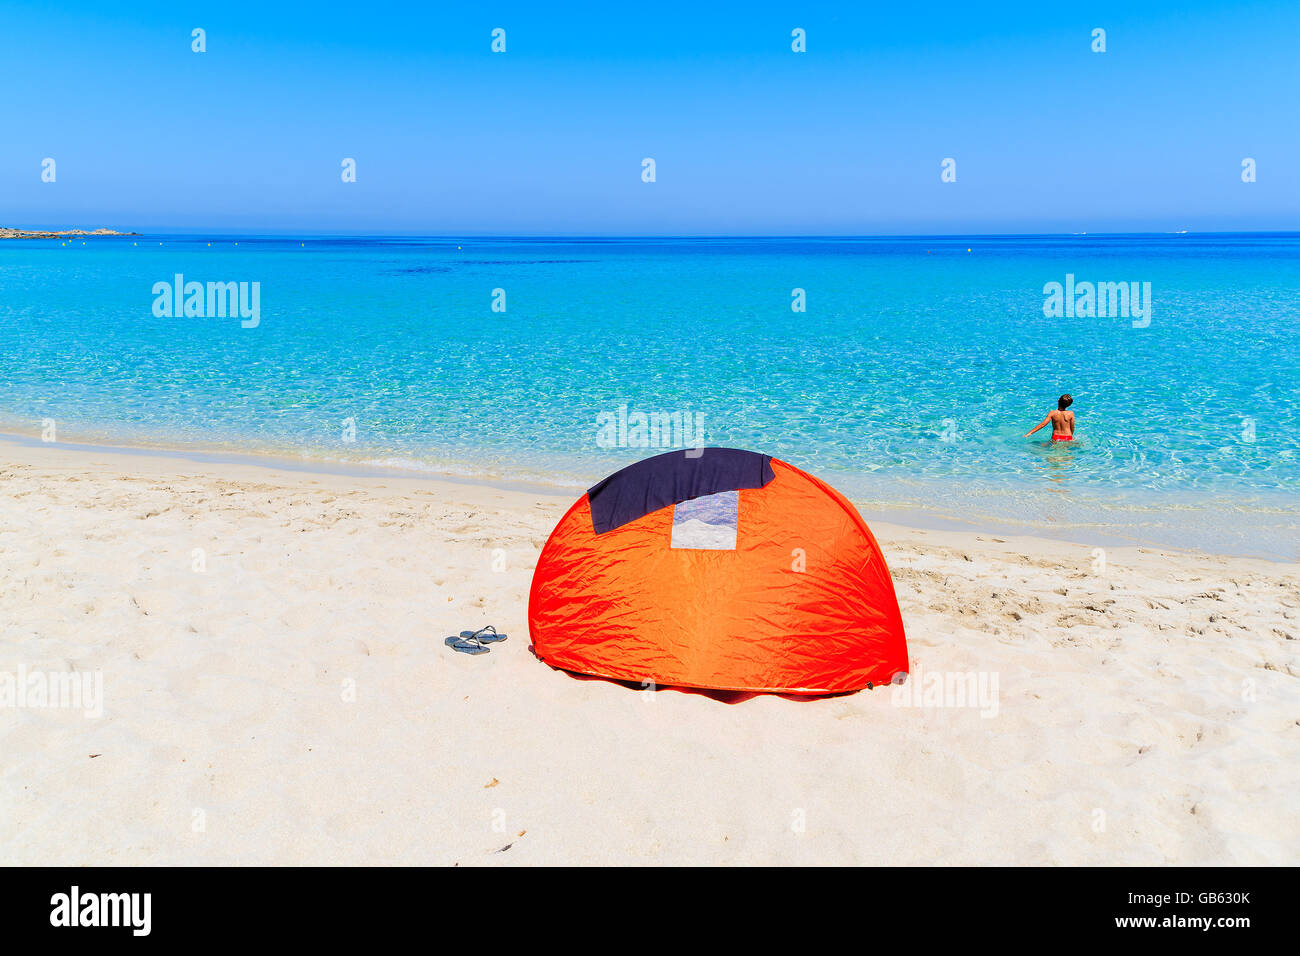 La sombrilla carpa en Sandy Beach y Bodri joven relajándose en el agua, la isla de Córcega, Francia Foto de stock